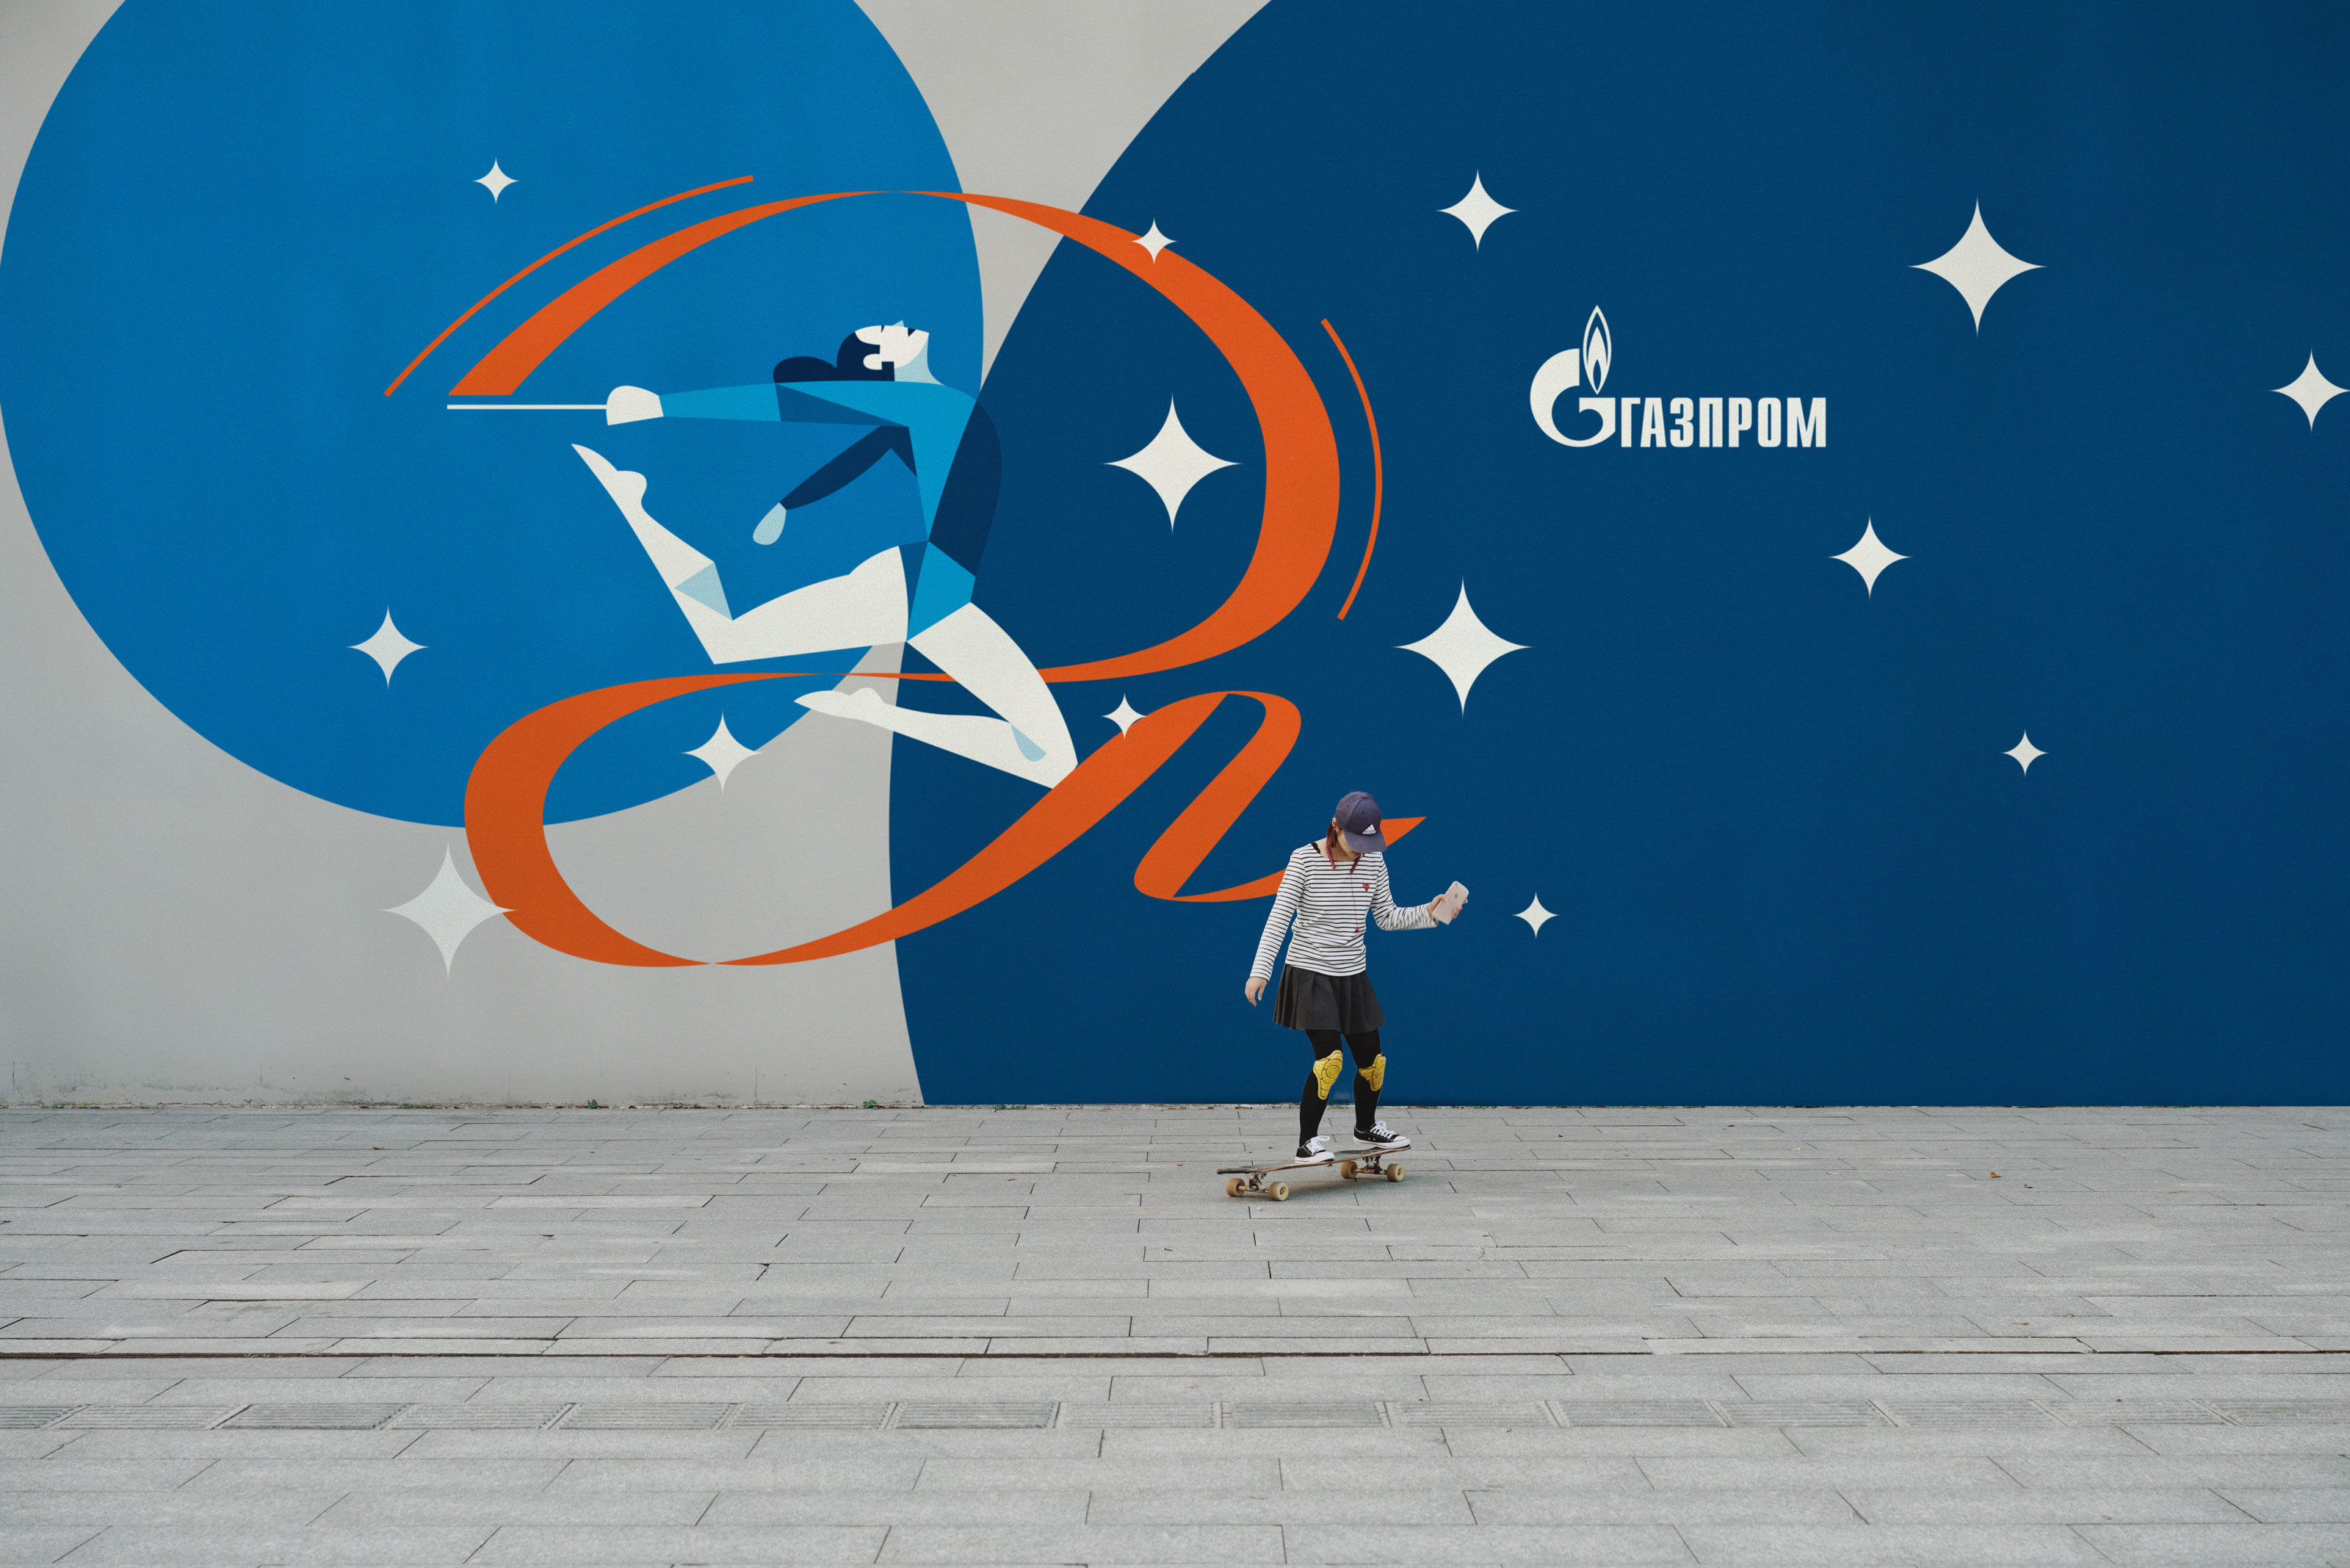 Графика для спортивных проектов «Газпрома»